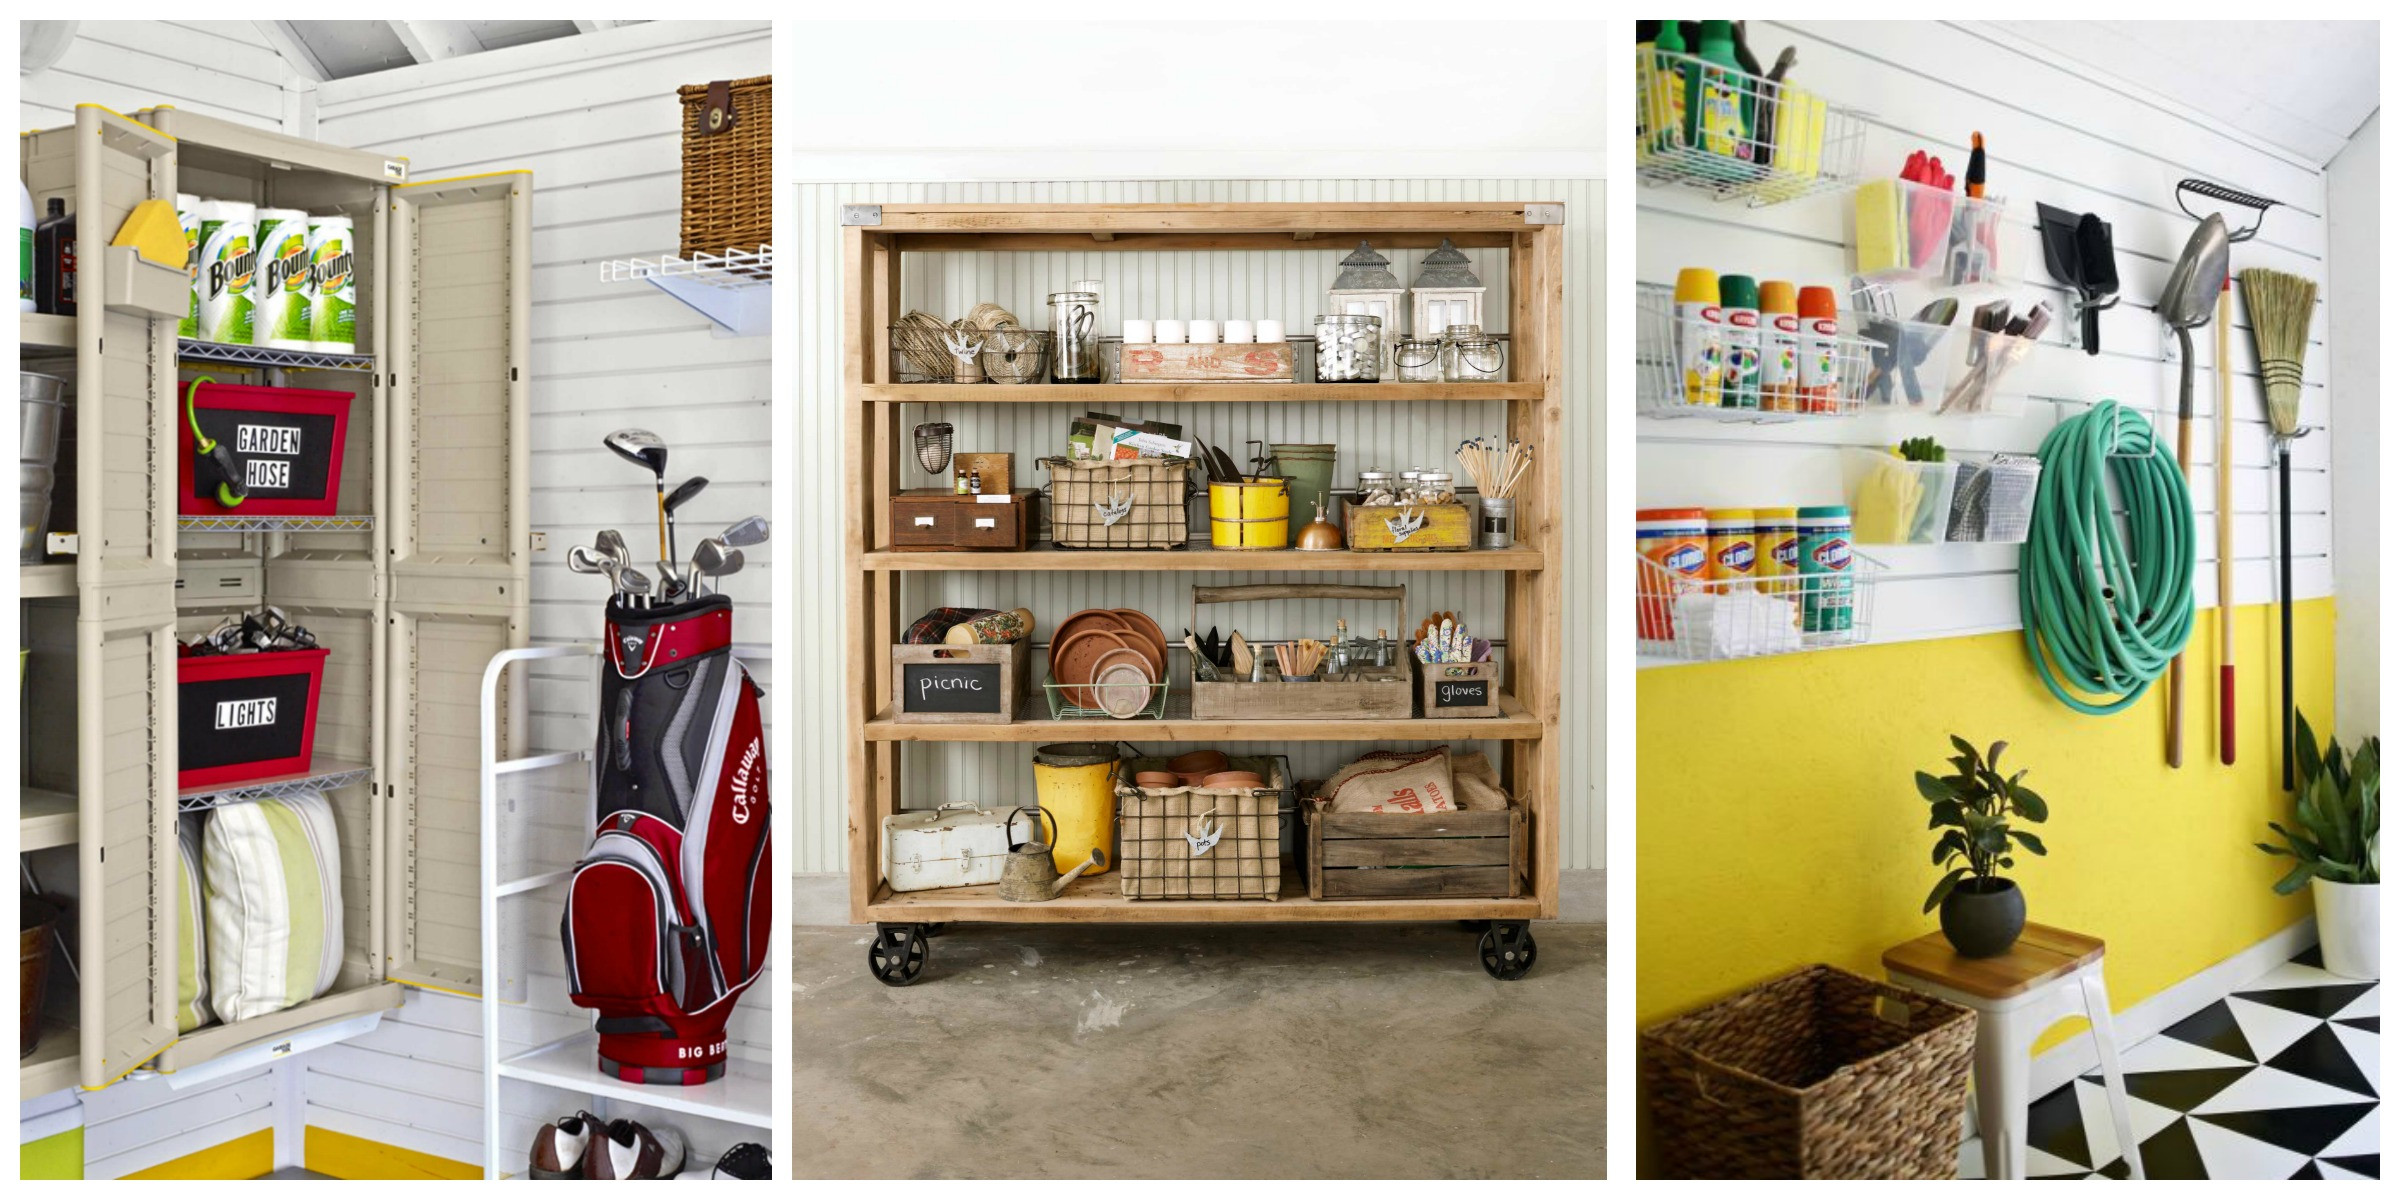 Garage Organizer Ideas DIY
 14 of the Best Garage Organization Ideas on Pinterest